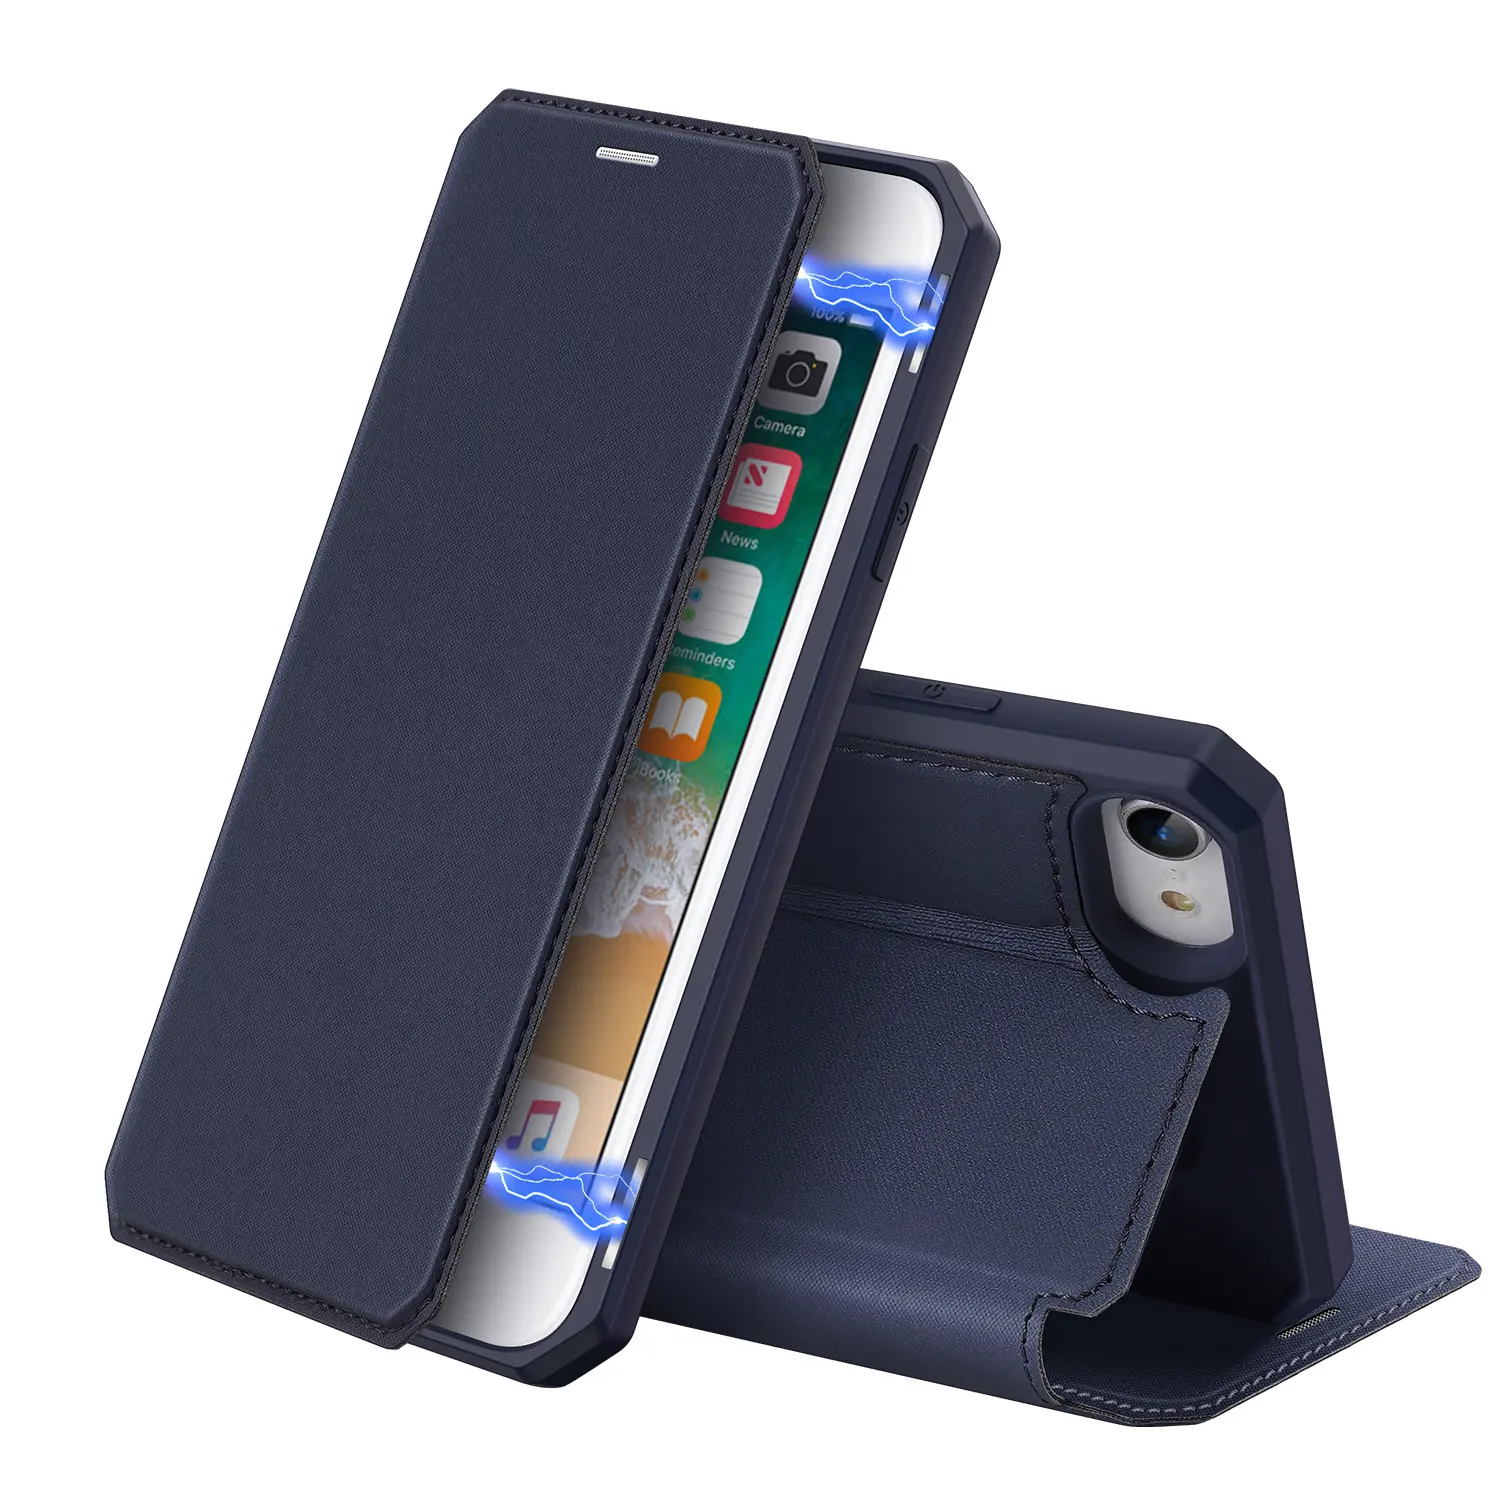 Orijinal duduskin cilt X Premium deri Flip iPhone için kılıf SE kitap cüzdan Coque manyetik kapak 2020